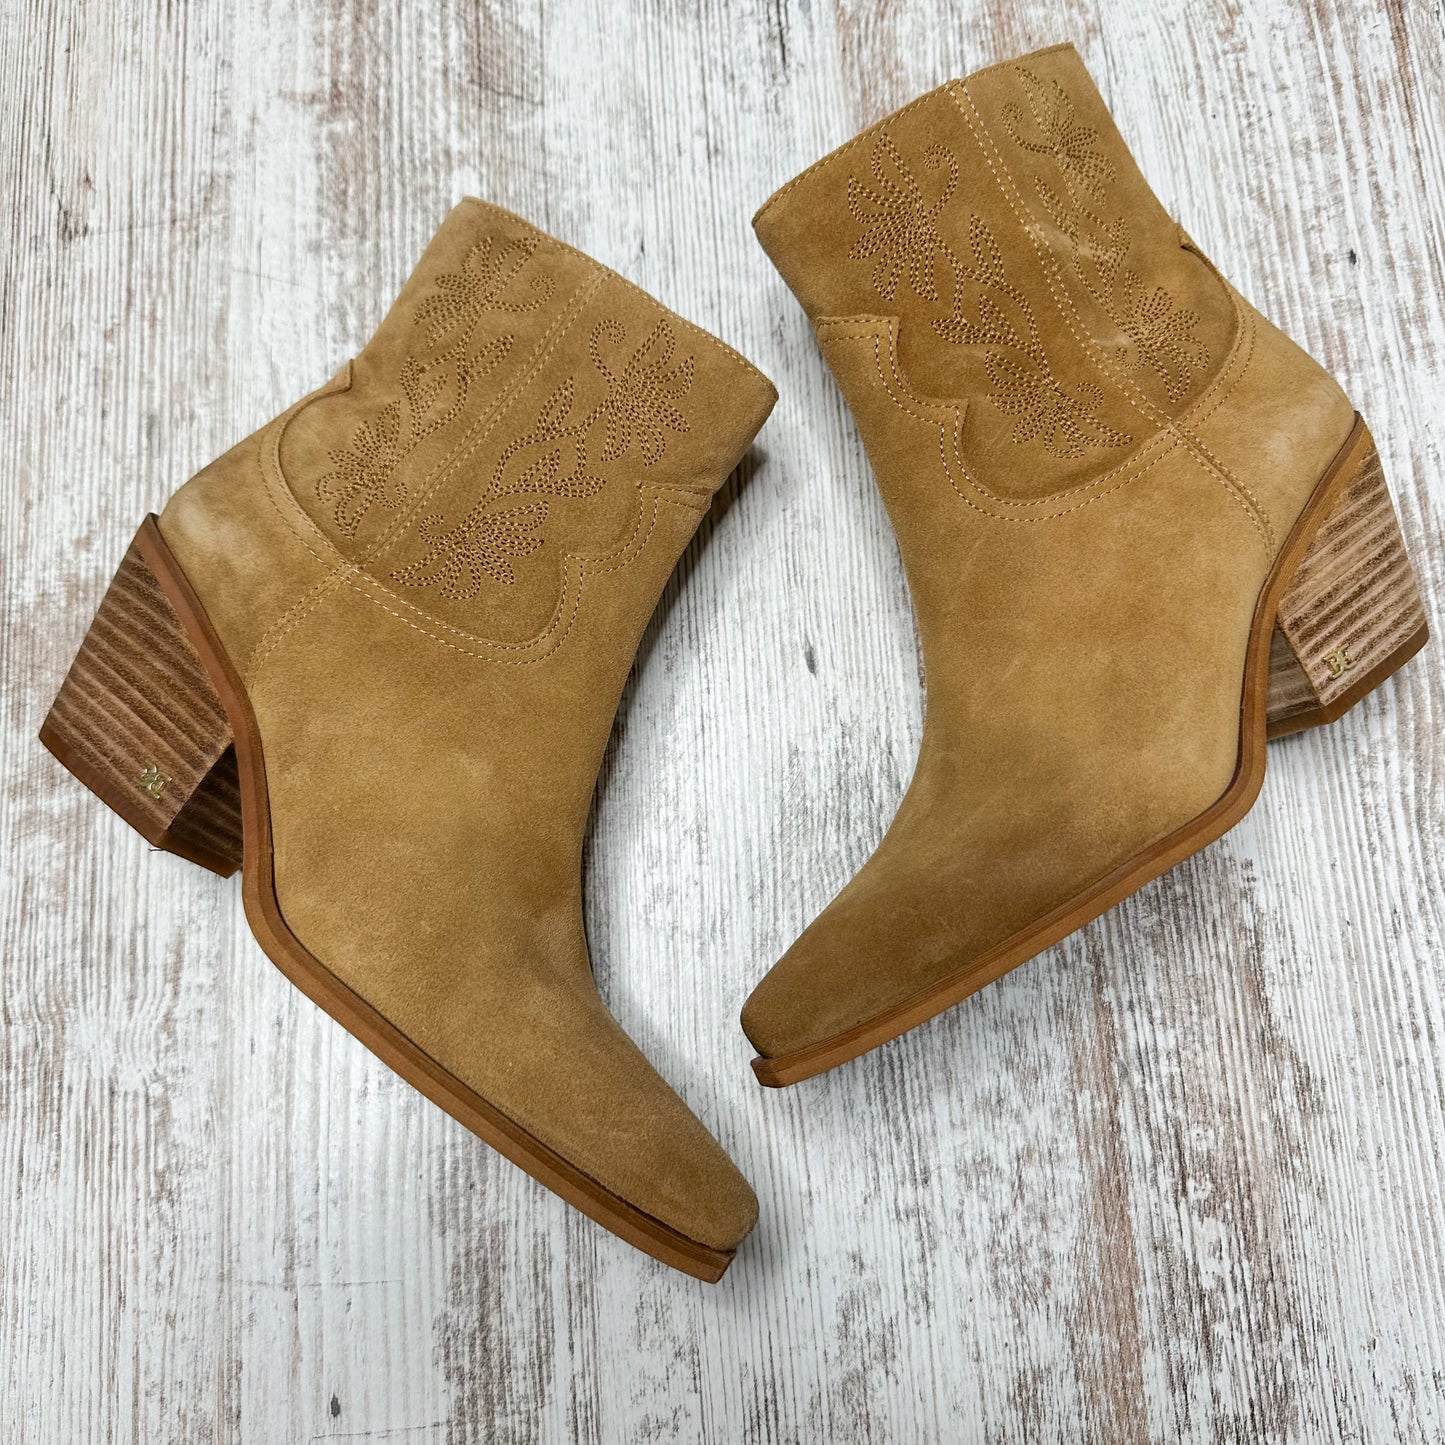 Sam Edelman Wilda Caramel Suede Boots Size 6.5